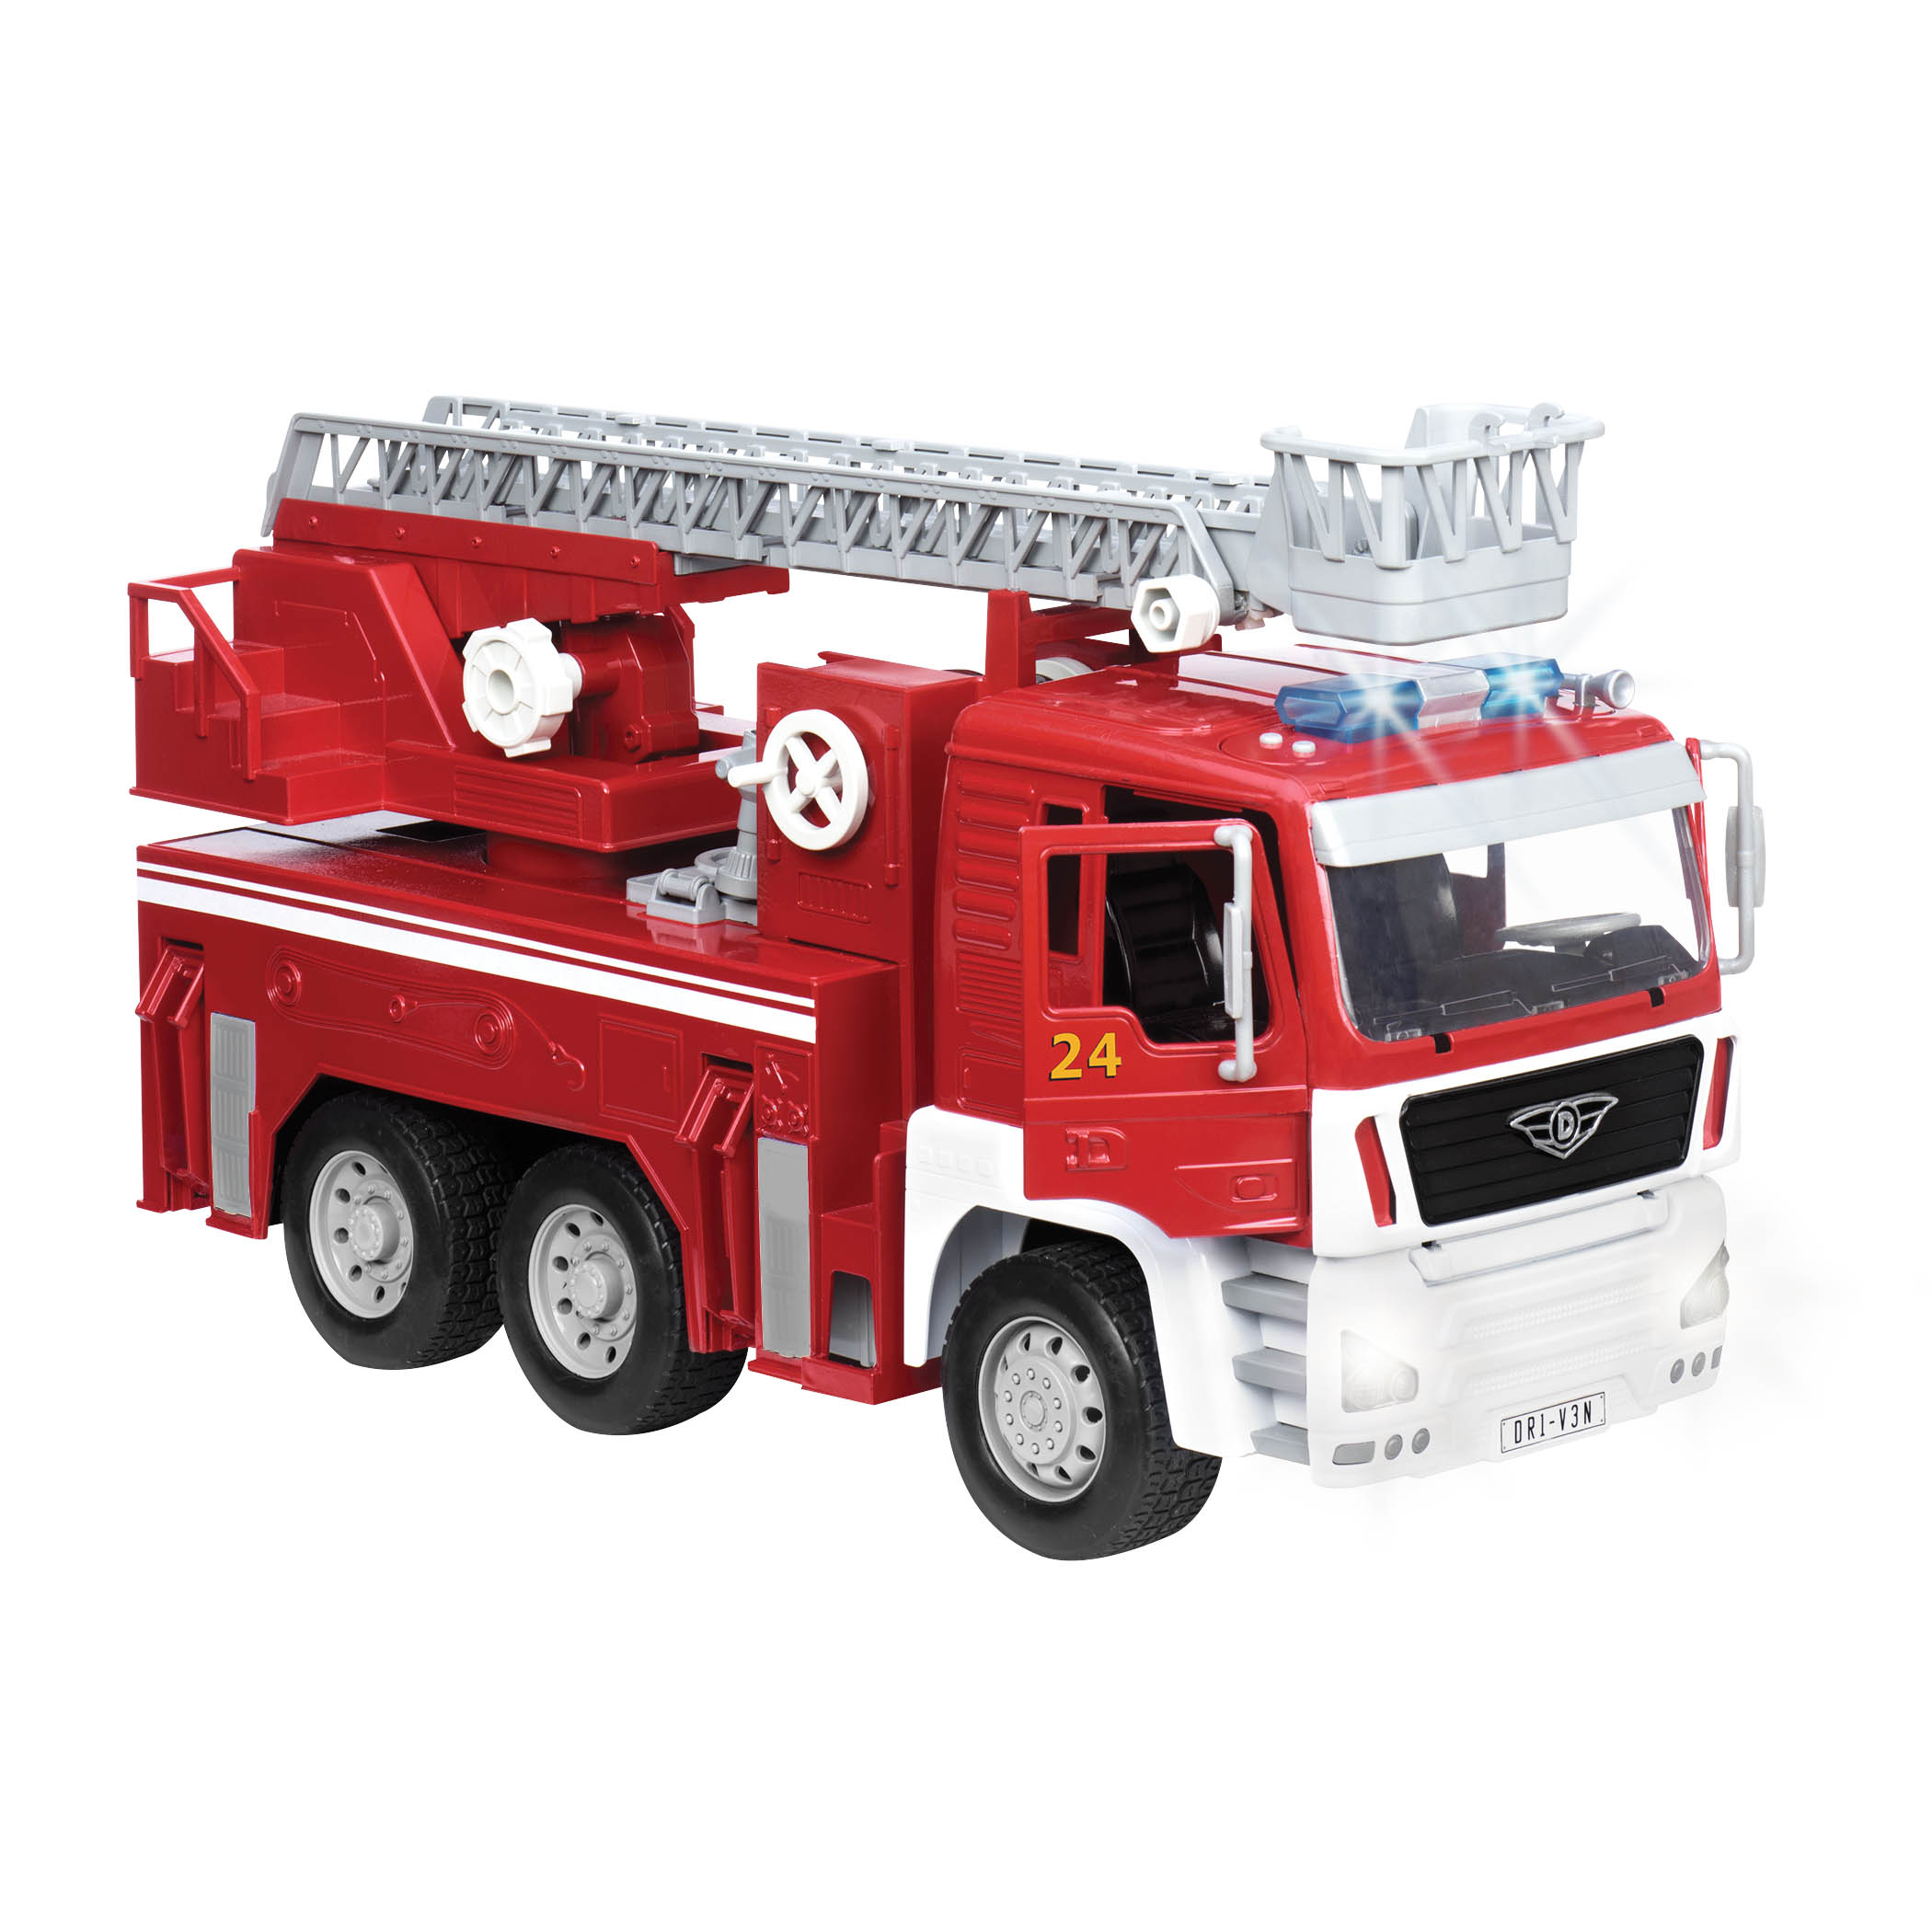 Rrroll Model Fire Flyer Electronic Toy Fire Truck Battat B 